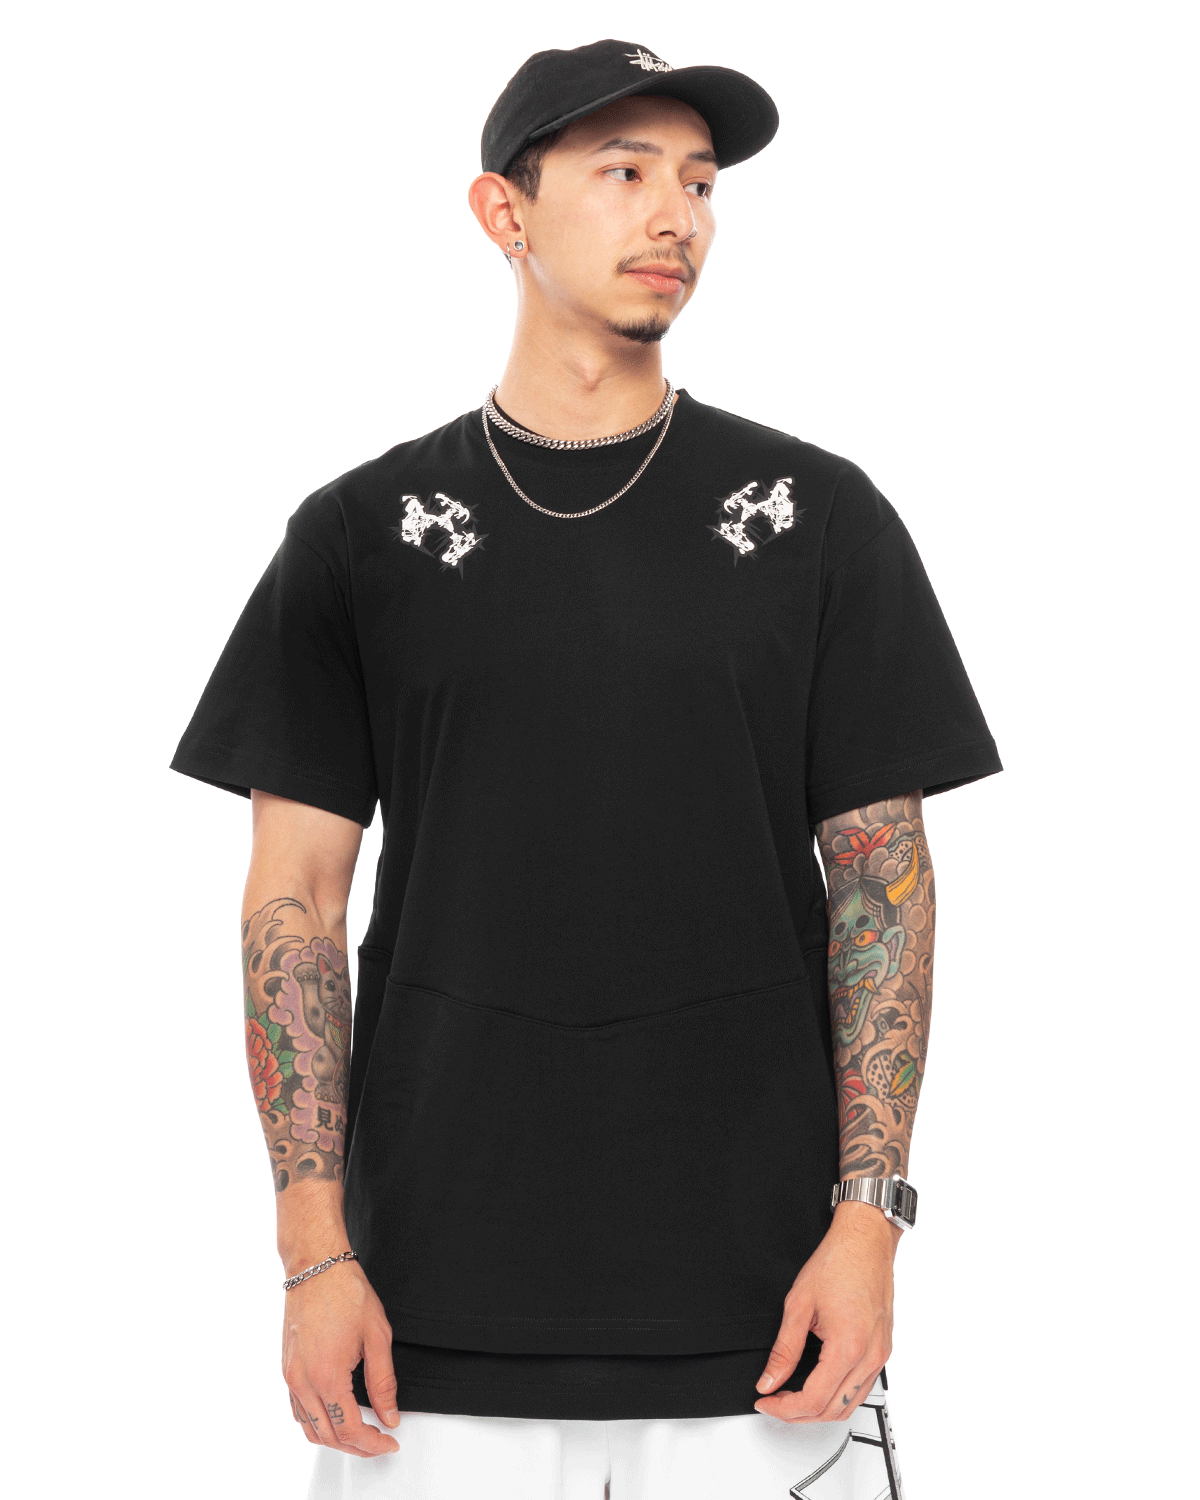 S28-PR-A Organic Cotton Short Sleeve T-shirt Gen. 1 Black